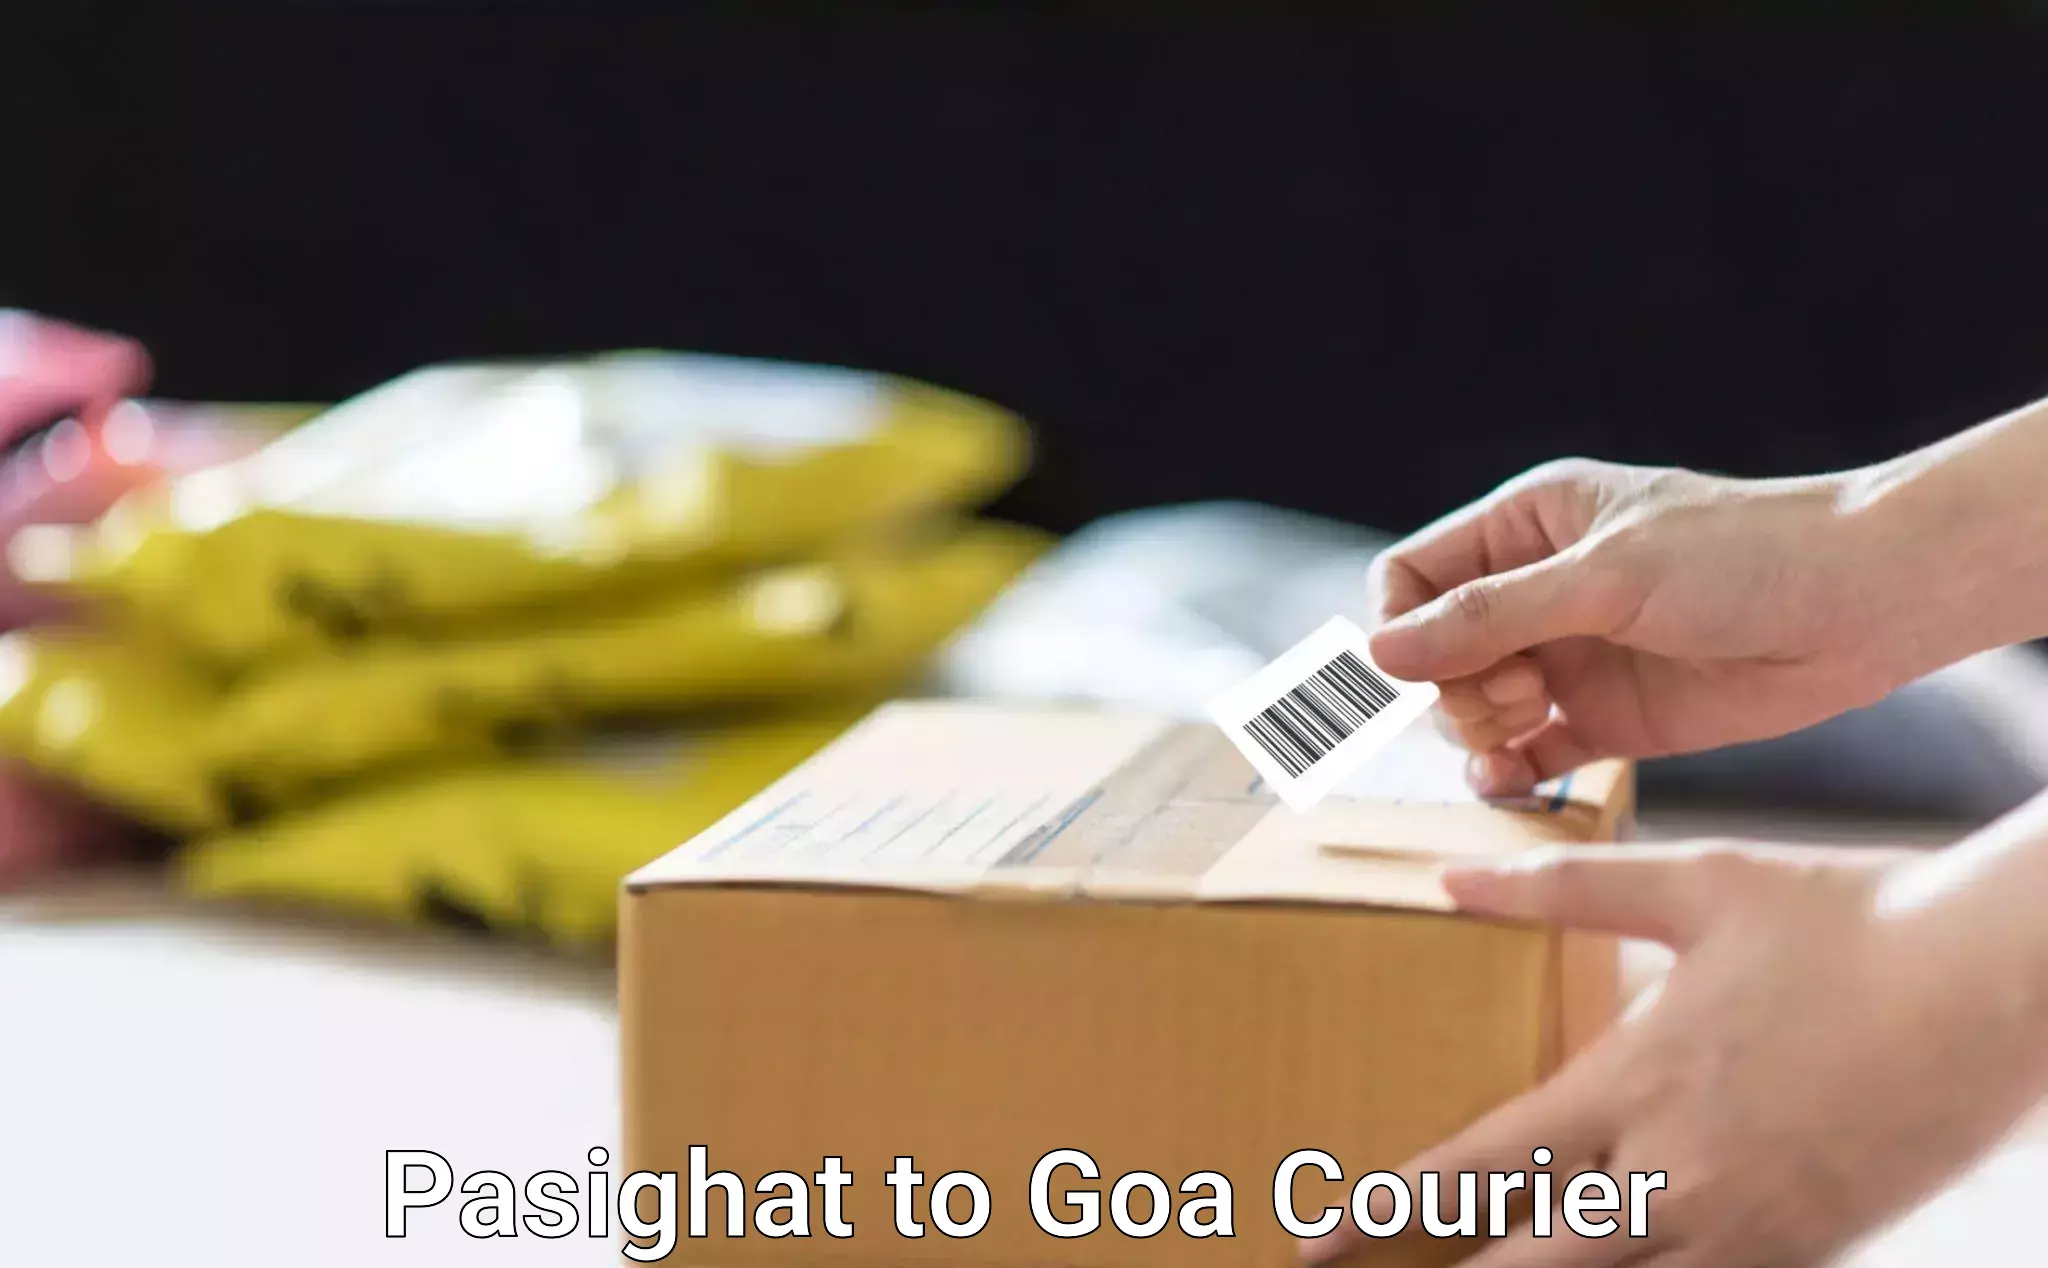 Digital courier platforms Pasighat to Goa